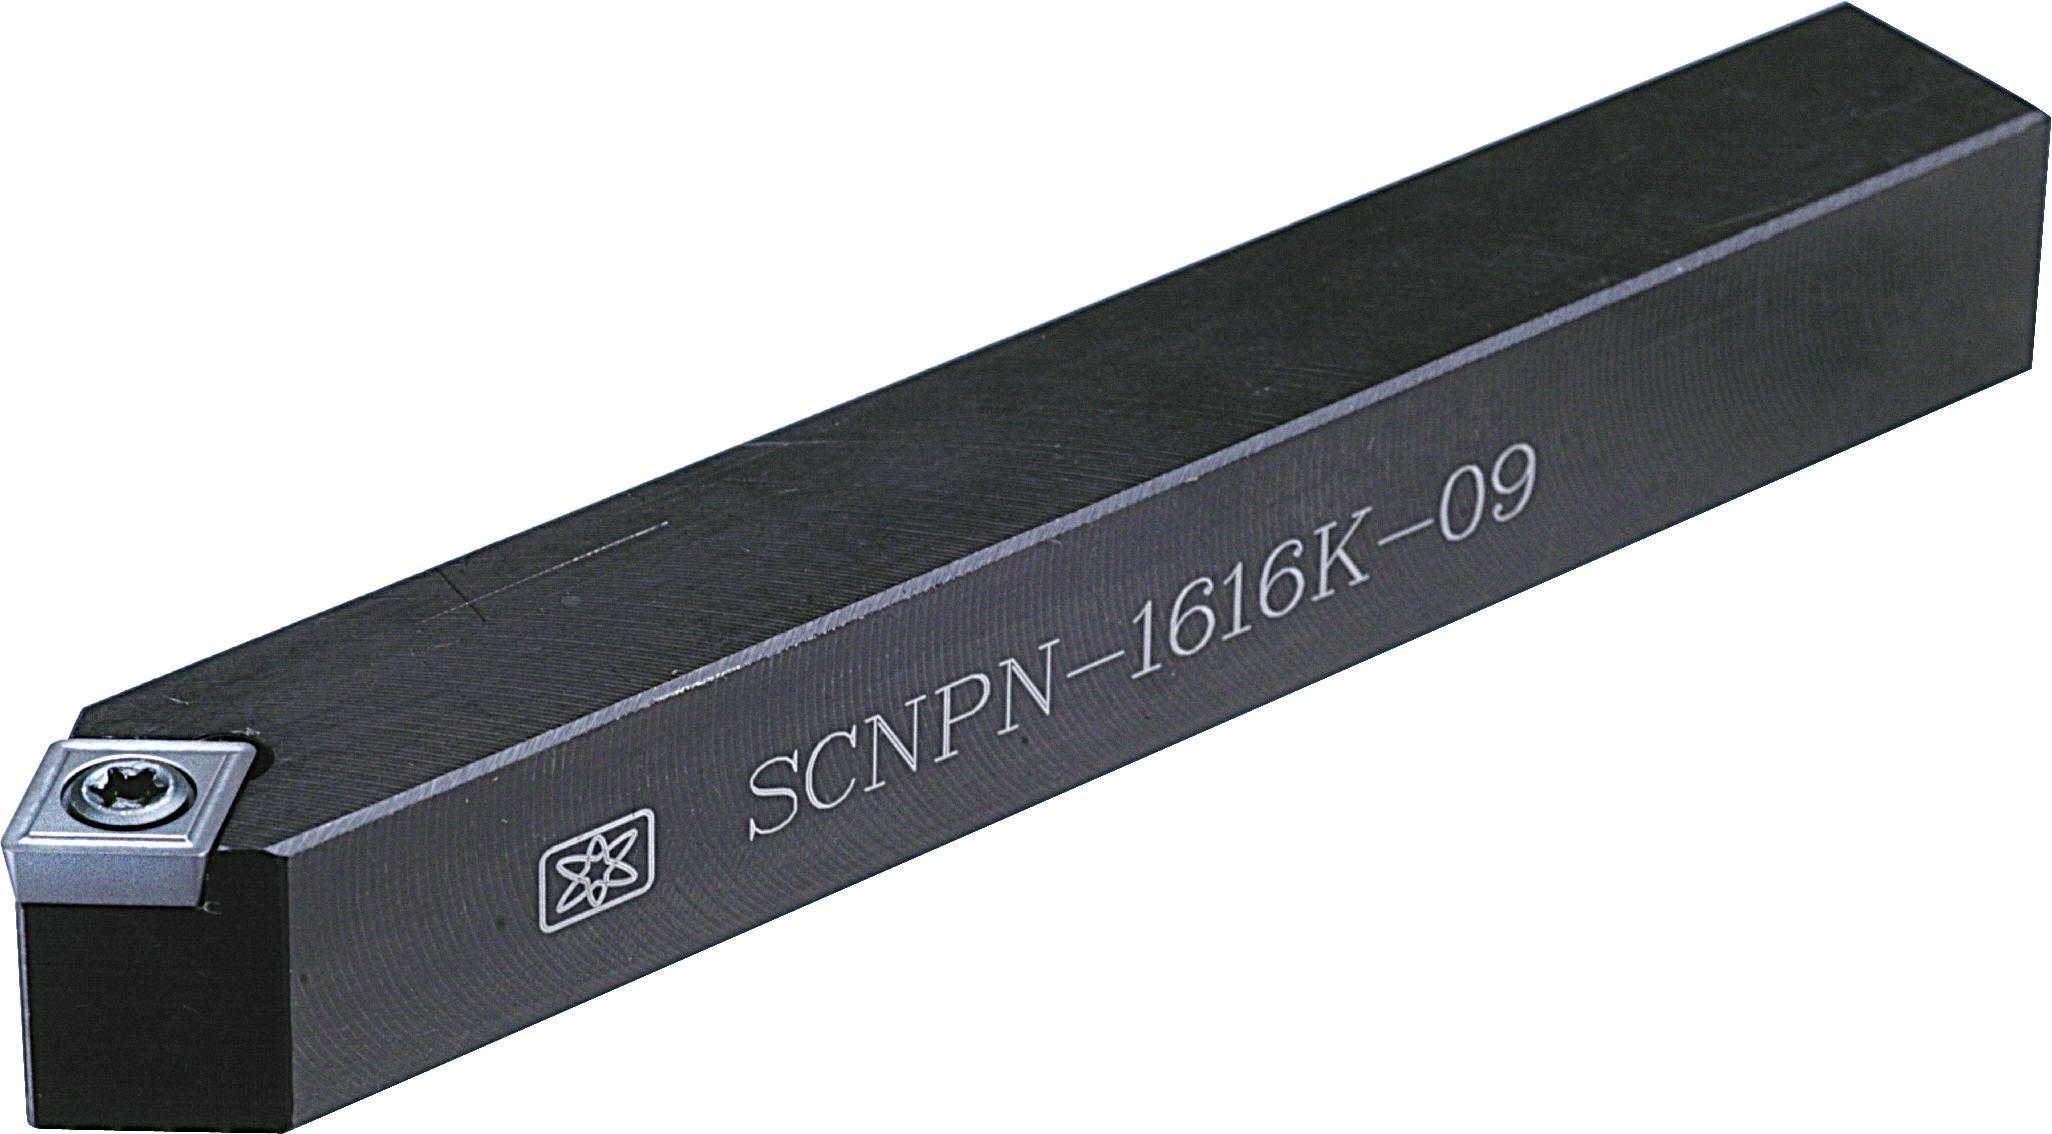 SCNPN (CP..0903..) External Turning Tool Holder